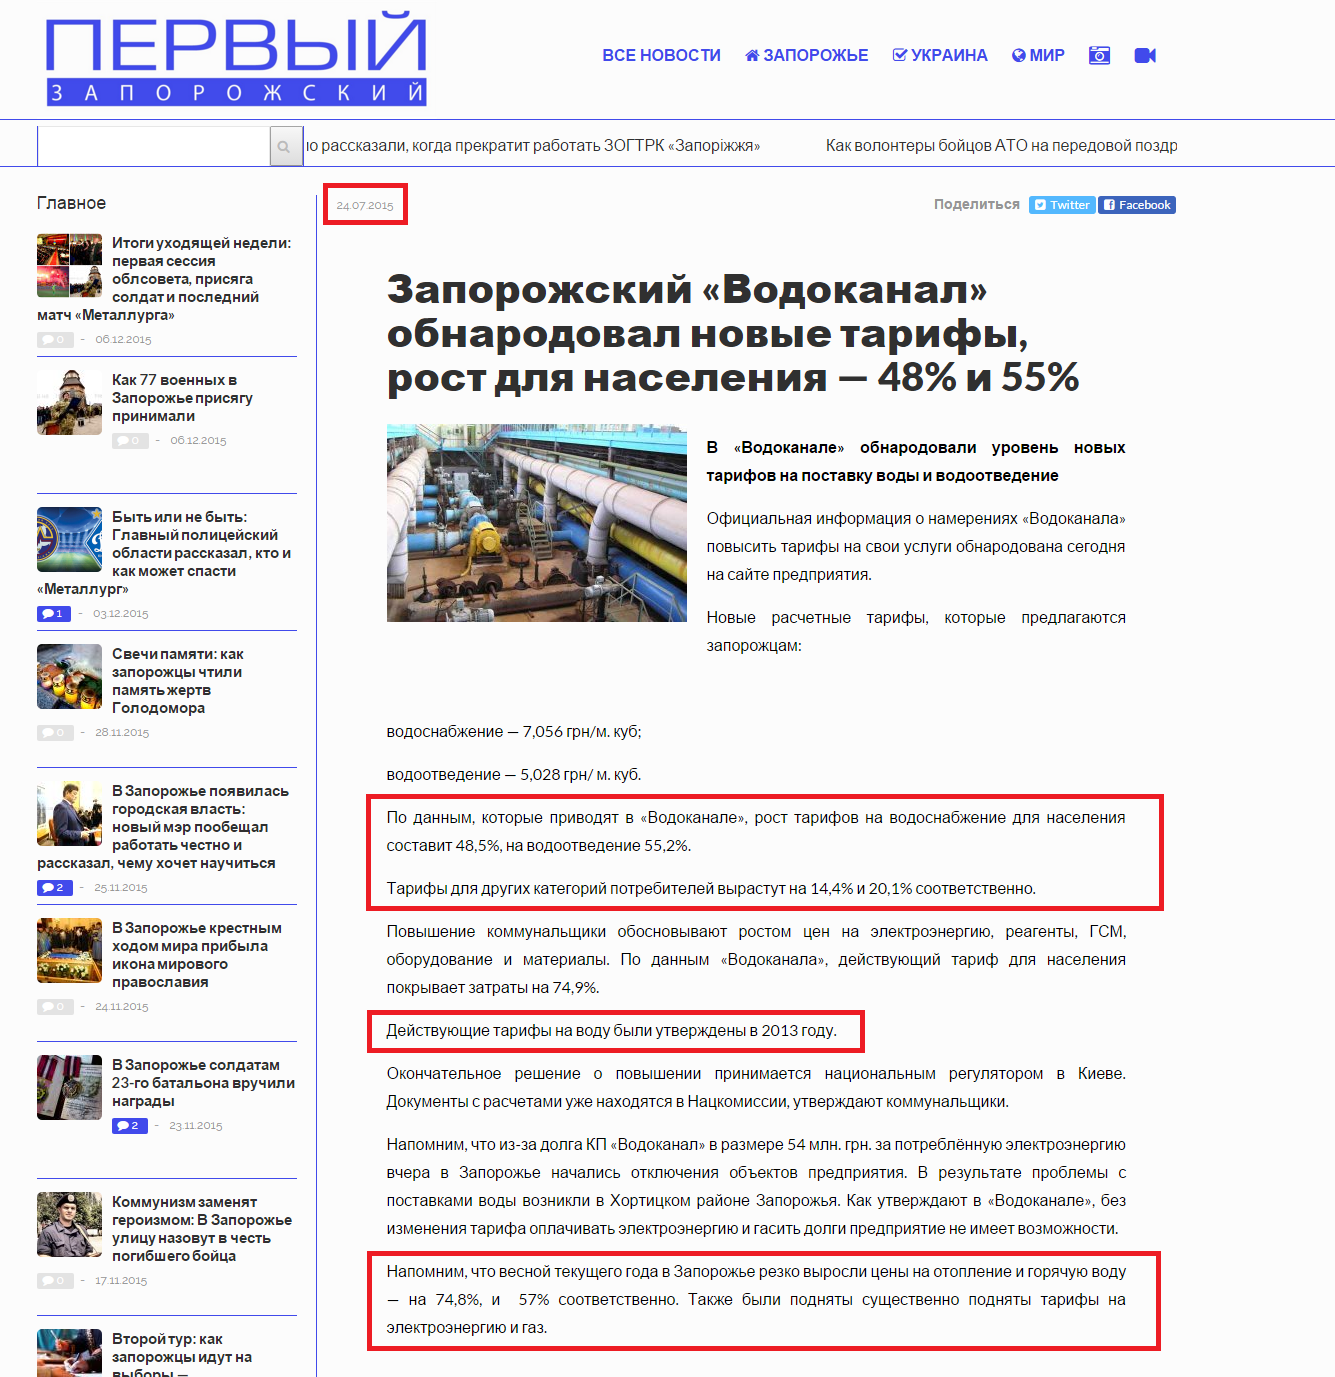 http://1news.zp.ua/zaporozhskij-vodokanal-obnarodoval-novye-tarify-rost-dlya-naseleniya-48-i-55/